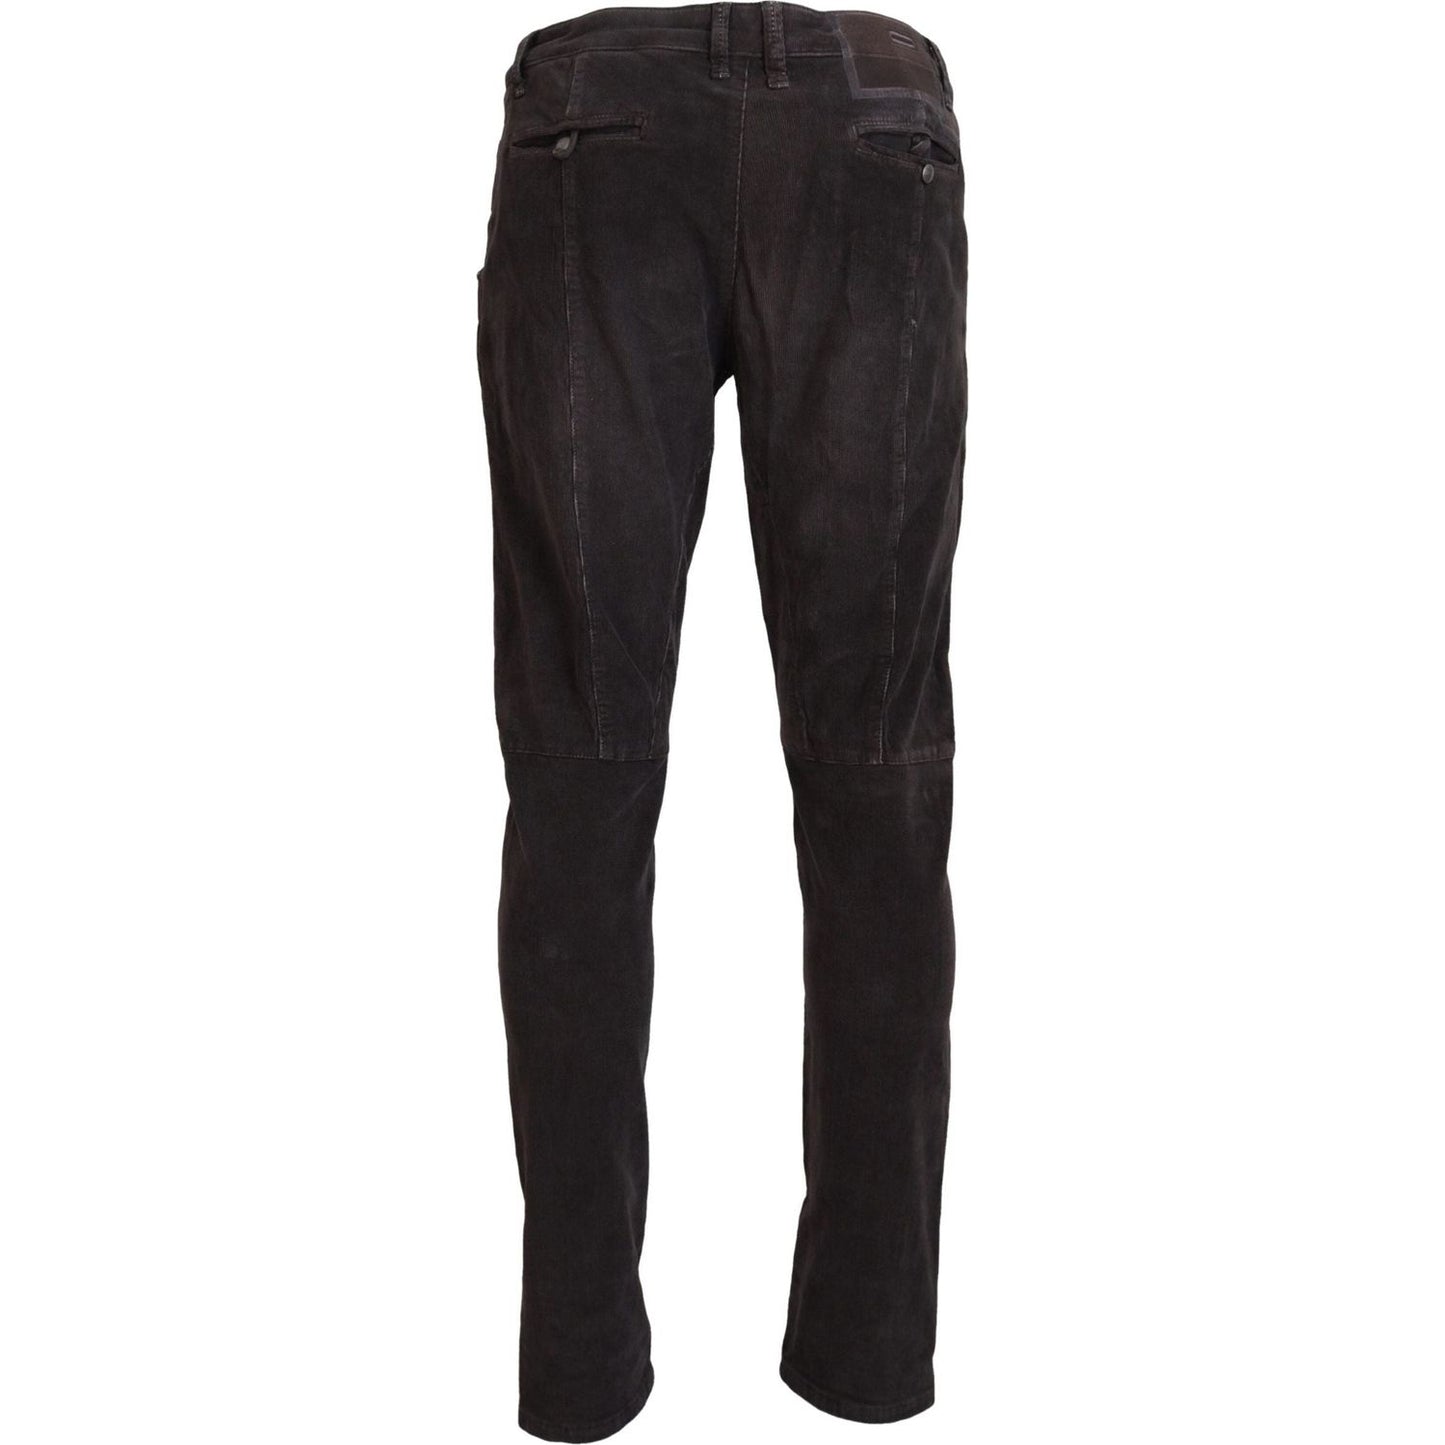 Acht Elegant Corduroy Brown Pants brown-cotton-straight-fit-men-casual-pants